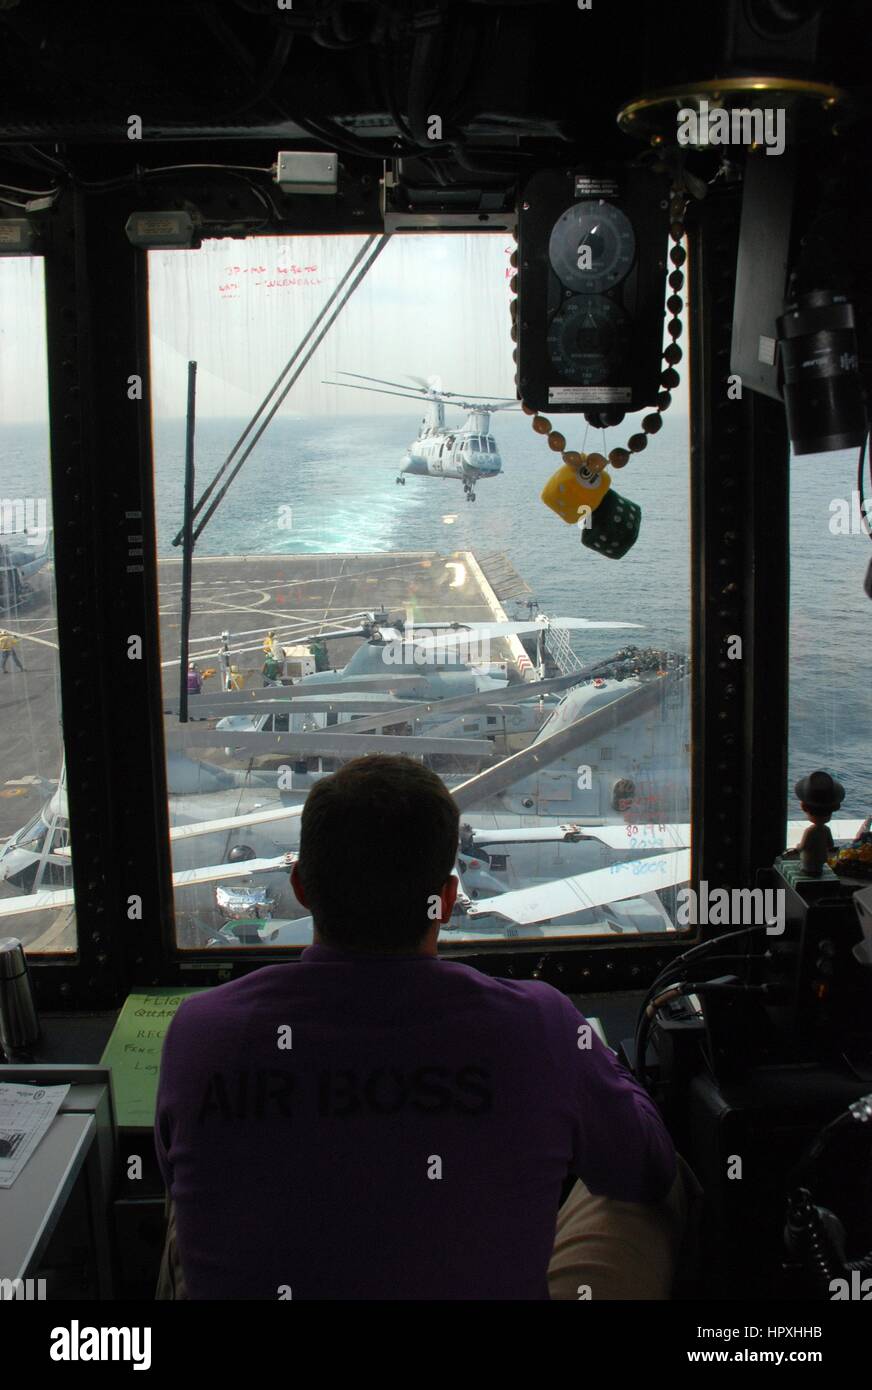 Il tenente Michael Landin supervisiona il decollo di un elicottero dal volo di deck control a bordo della USS Green Bay, 29 gennaio 2013. Immagine cortesia Elizabeth Merriam/US Navy. Foto Stock